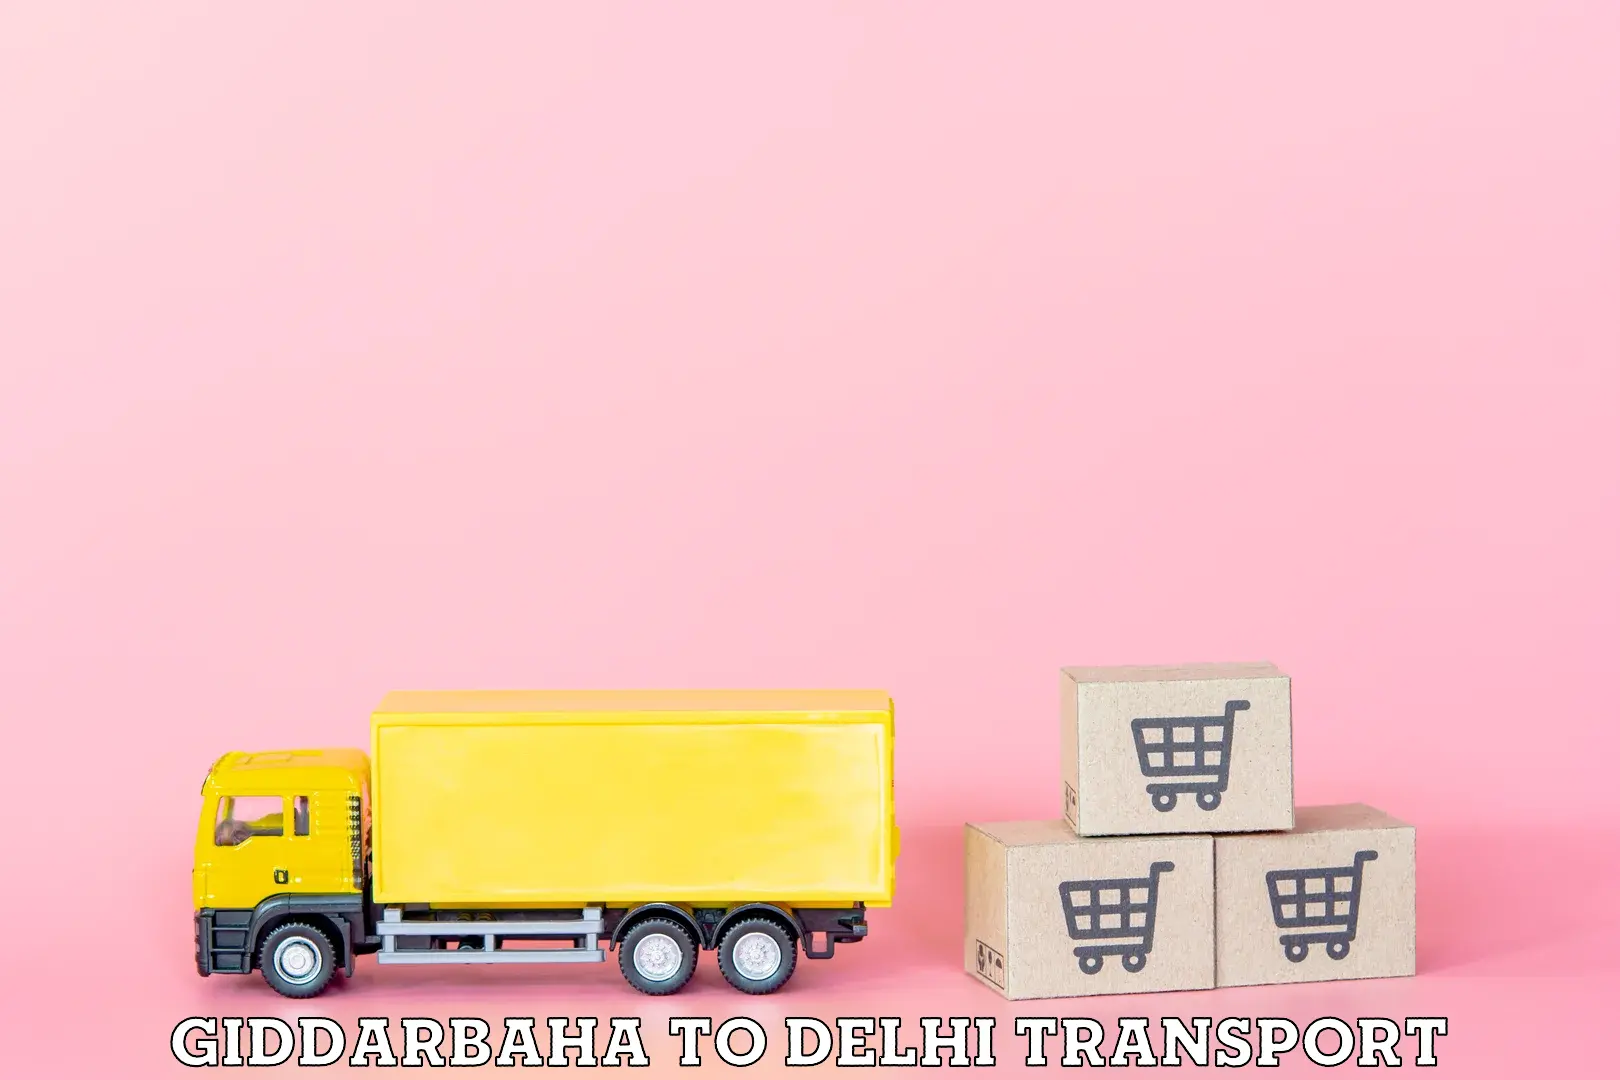 Goods transport services Giddarbaha to Subhash Nagar